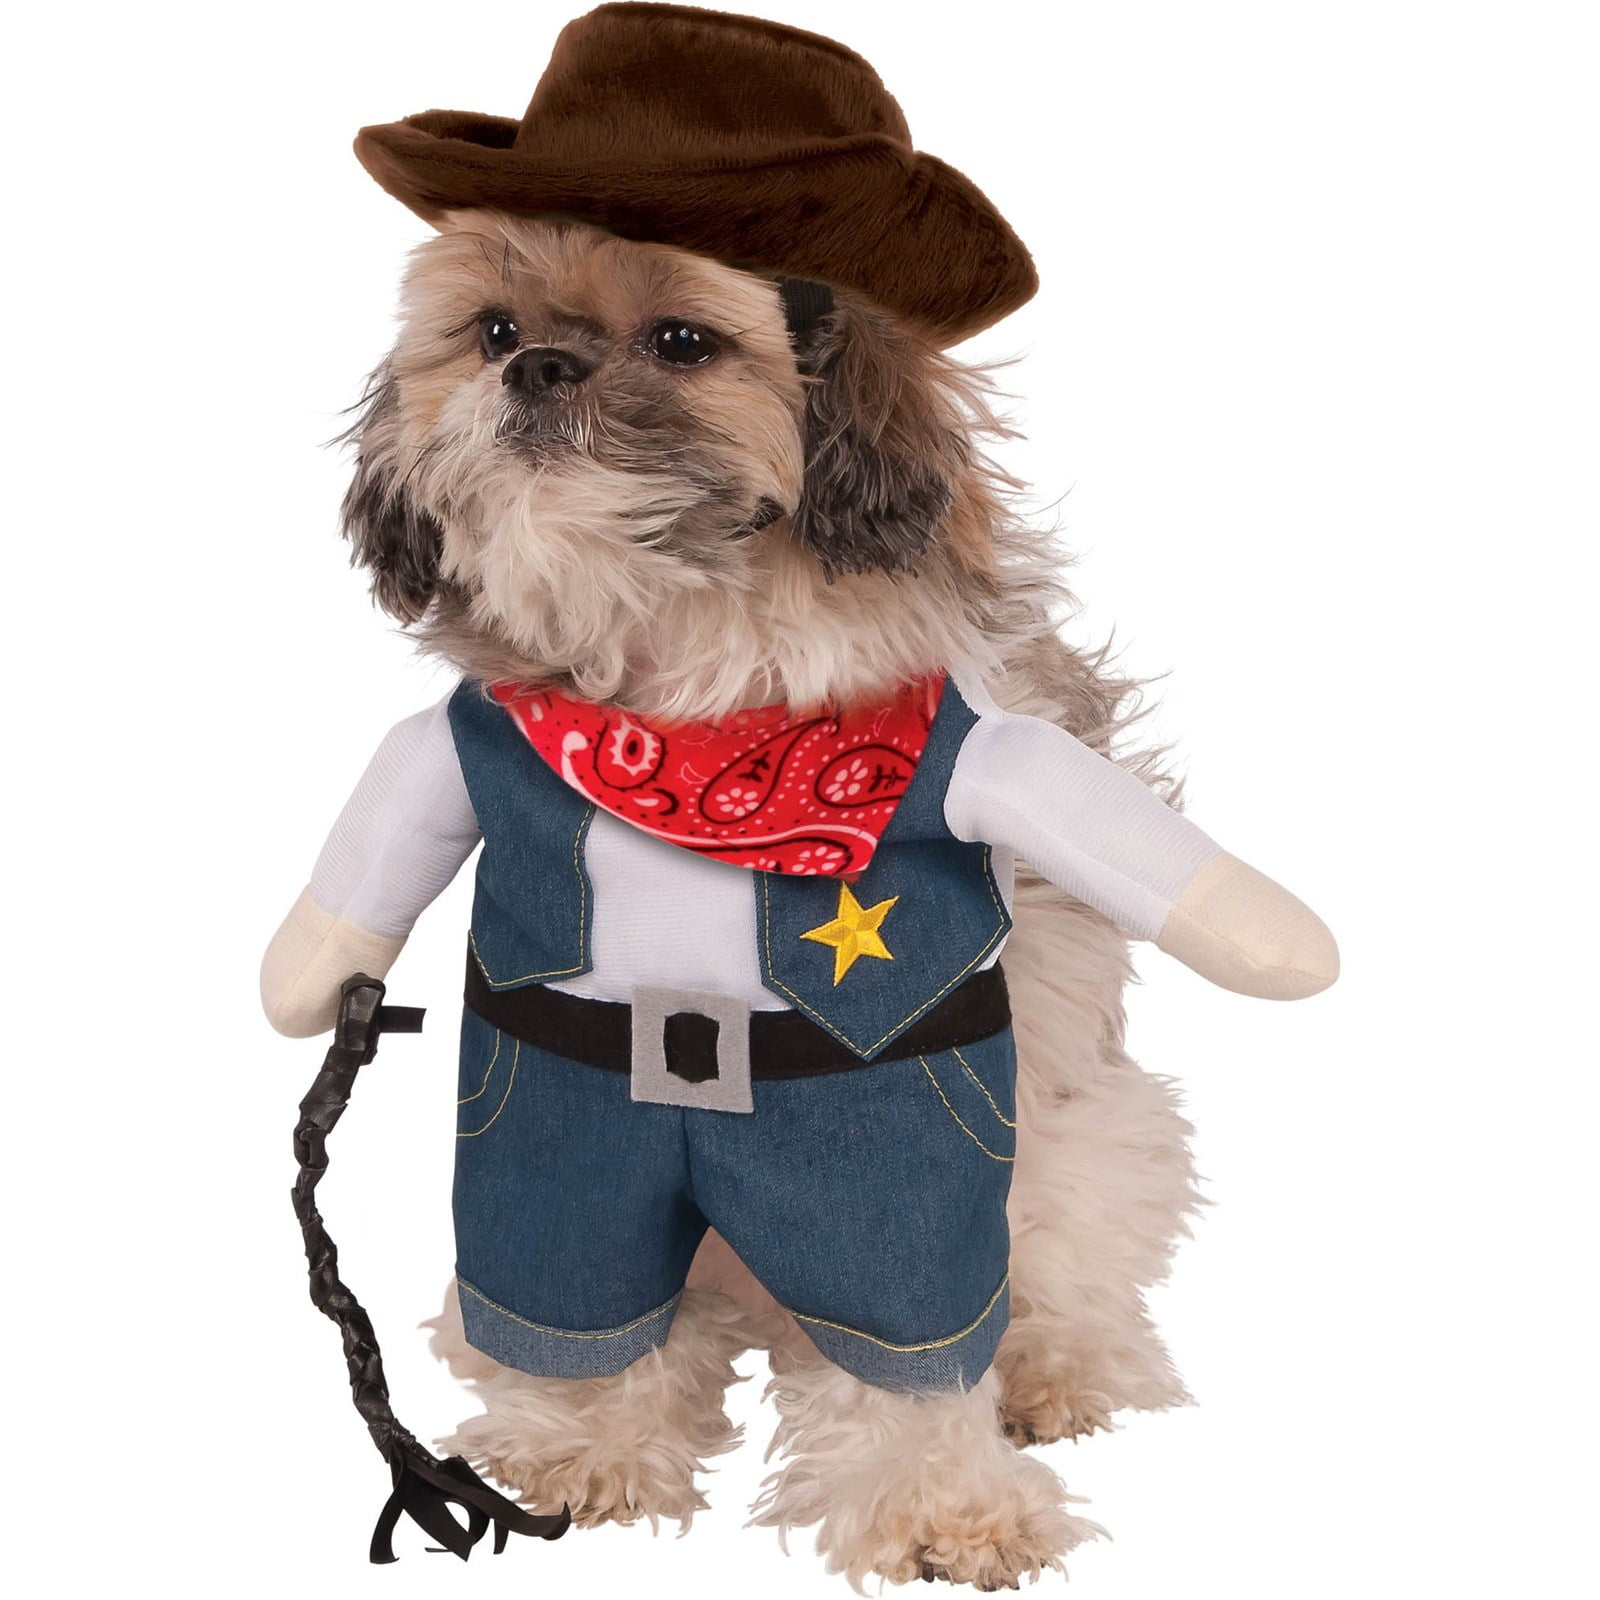 Cowboy Pet Costume Walmart.com